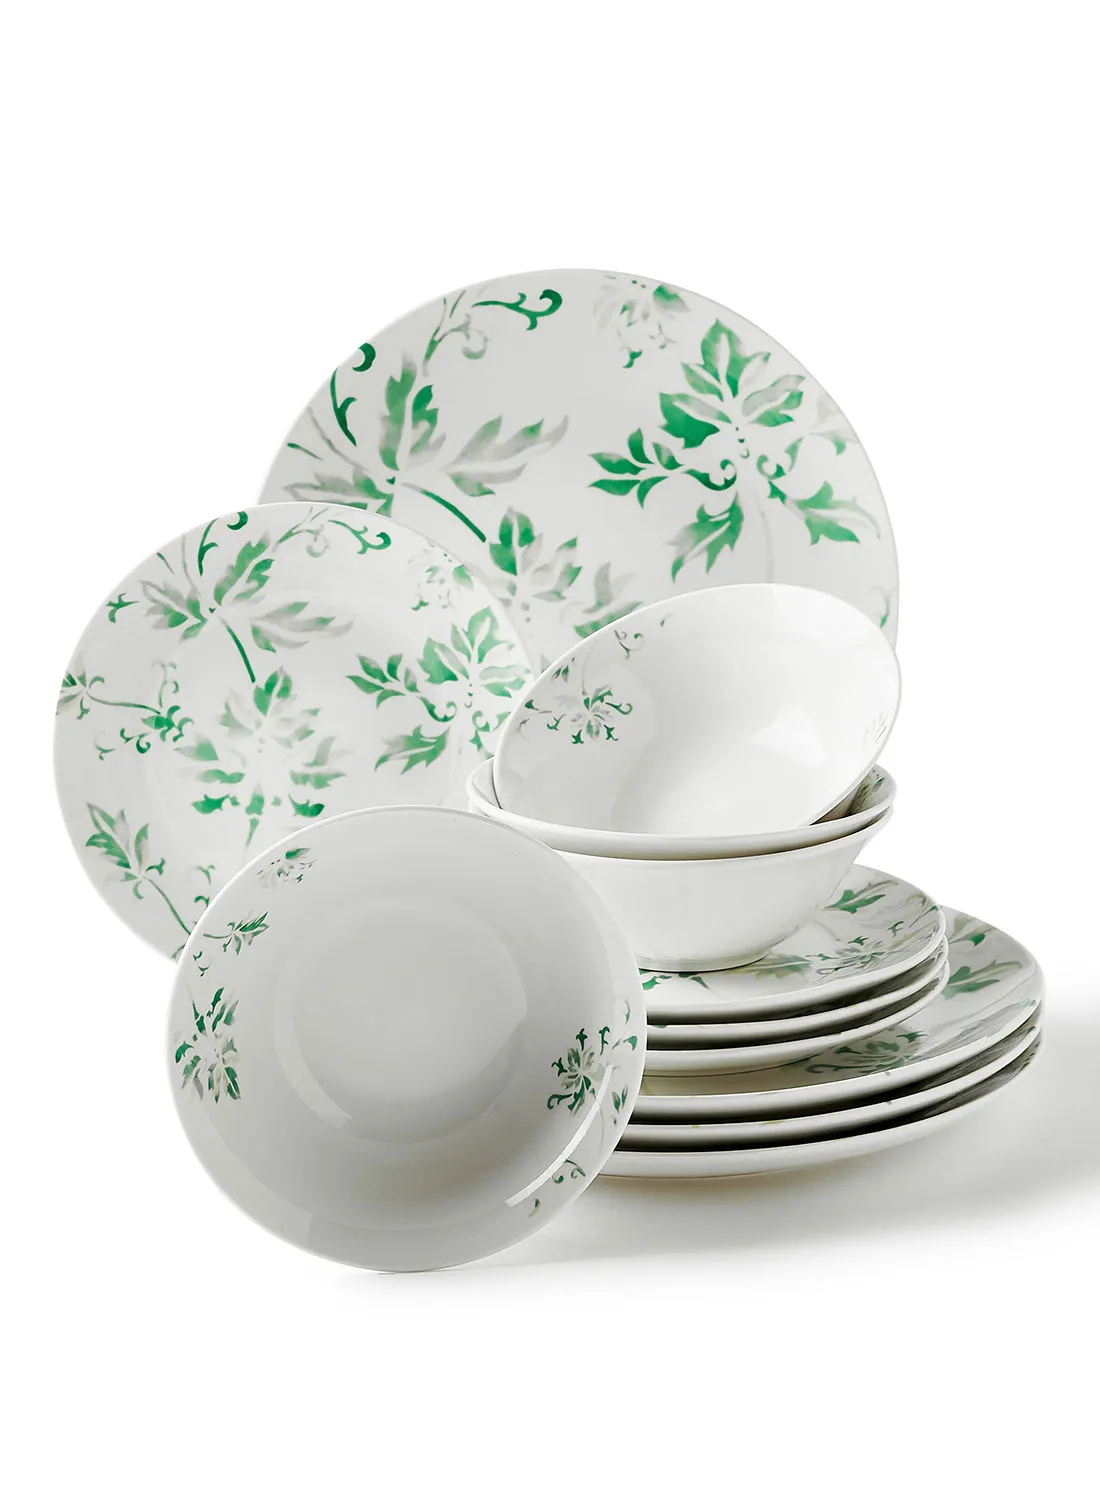 noon east 12 Piece Porcelain Dinner Set - Dishes, Plates - Dinner Plate, Side Plate, Bowl - Serves 4 - Printed Design Ivy